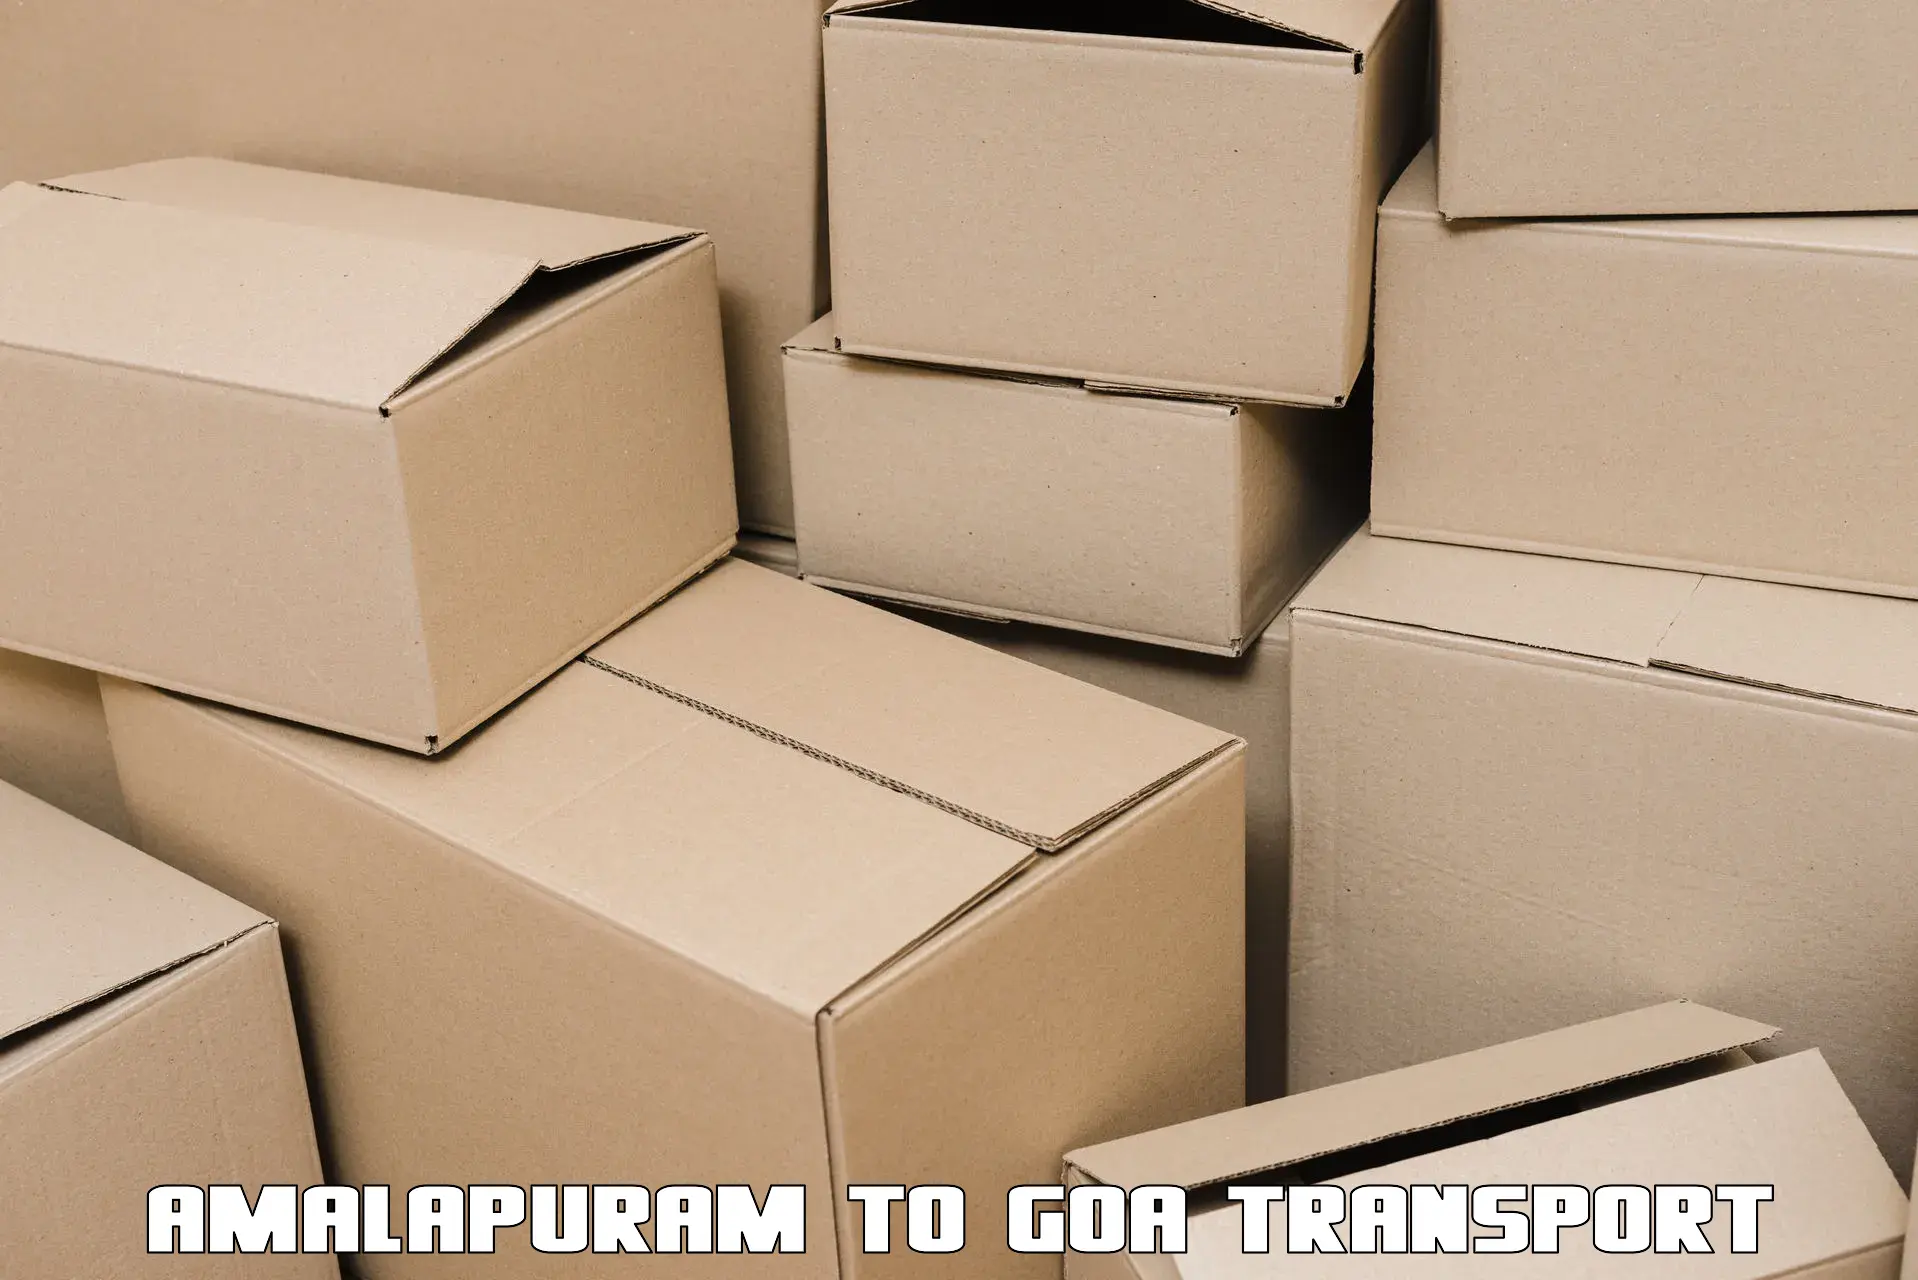 Furniture transport service Amalapuram to Mormugao Port